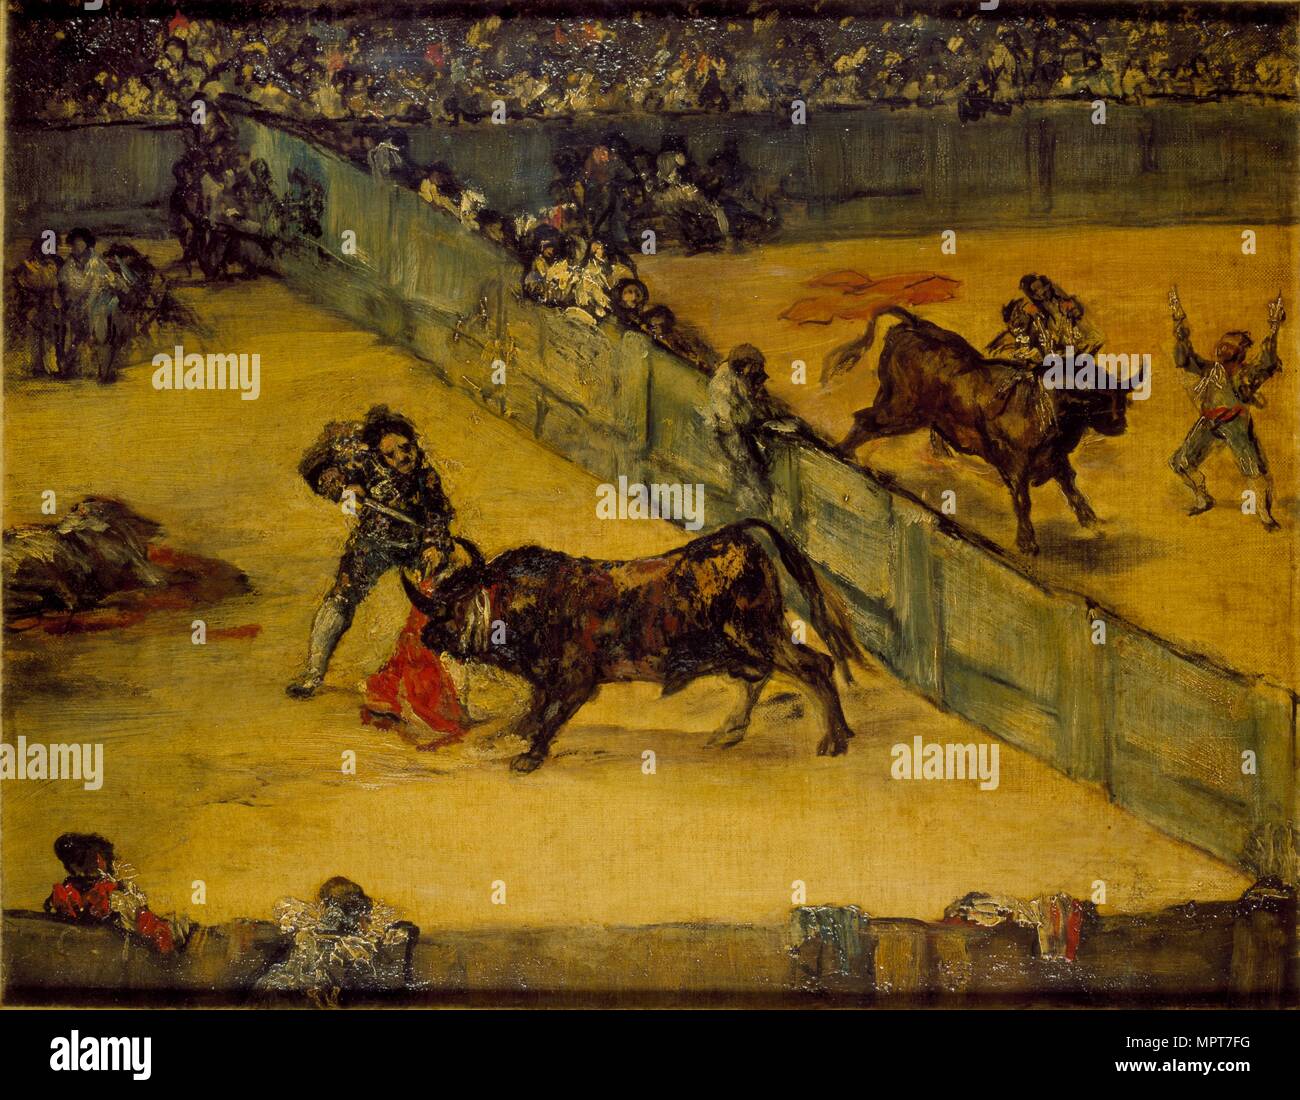 Scène à une corrida : Division de place, c du xixe siècle. Artiste : Francisco Goya. Banque D'Images